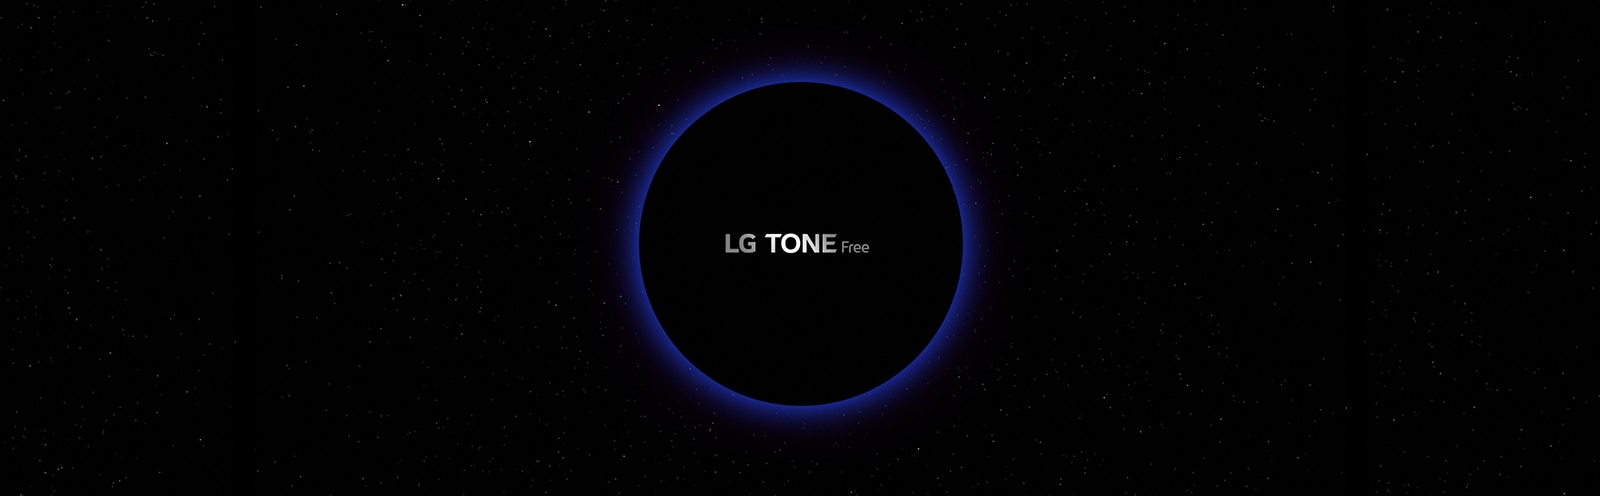 Hình ảnh không gian thiên hà và một vòng tròn chiếu sáng màu xanh ở giữa với dòng chữ "LG TONE Free" bên trong vòng tròn